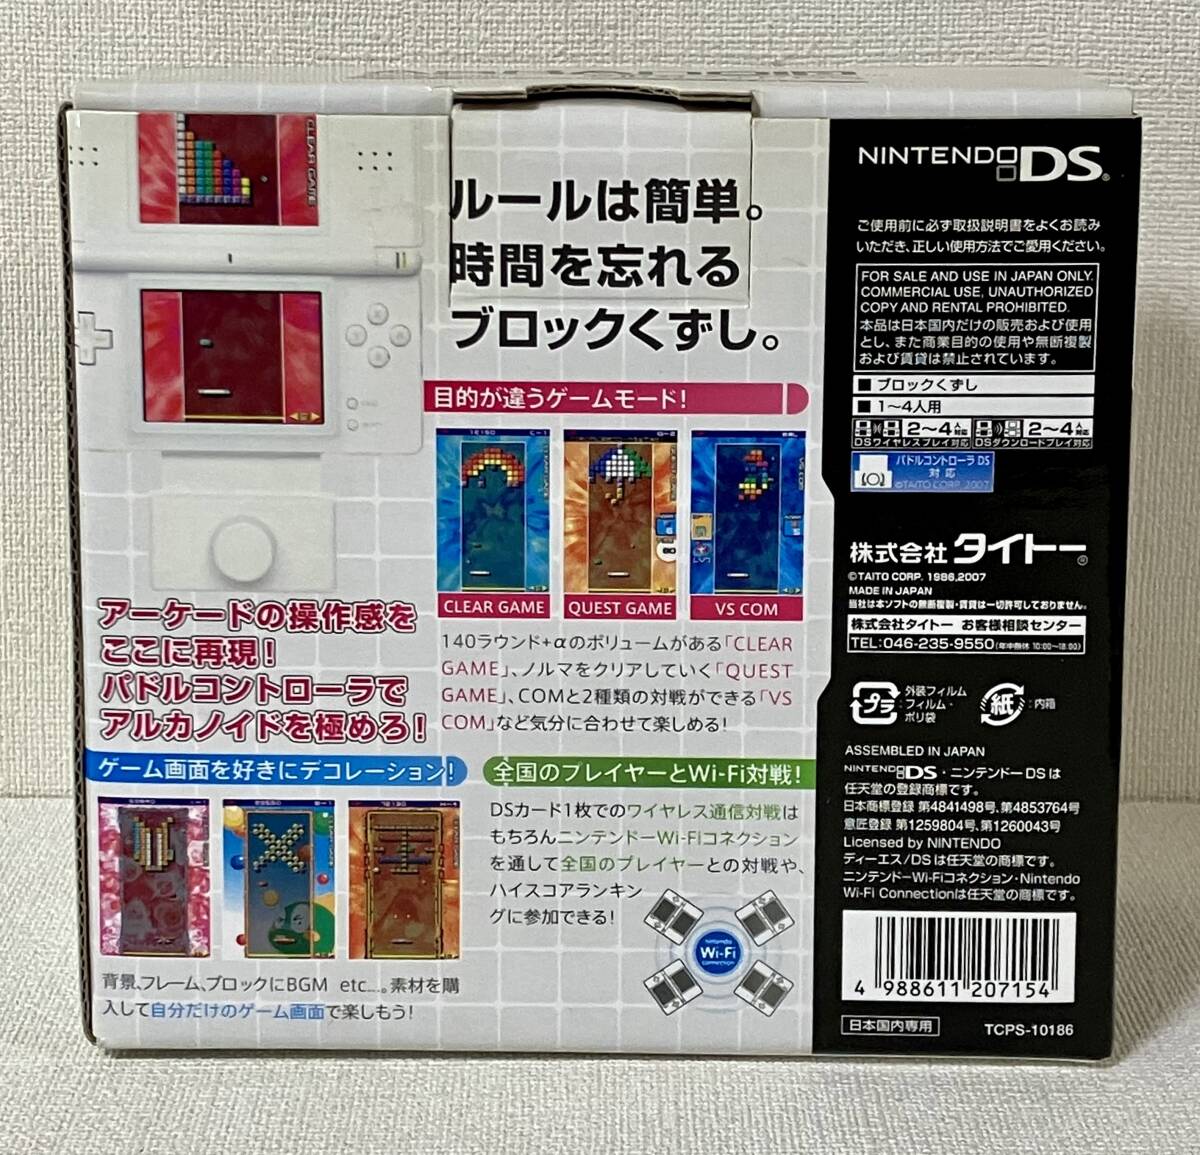 [ нераспечатанный ]a LUKA noidoDS лопасть контроллер включение в покупку Nintendo DS soft 